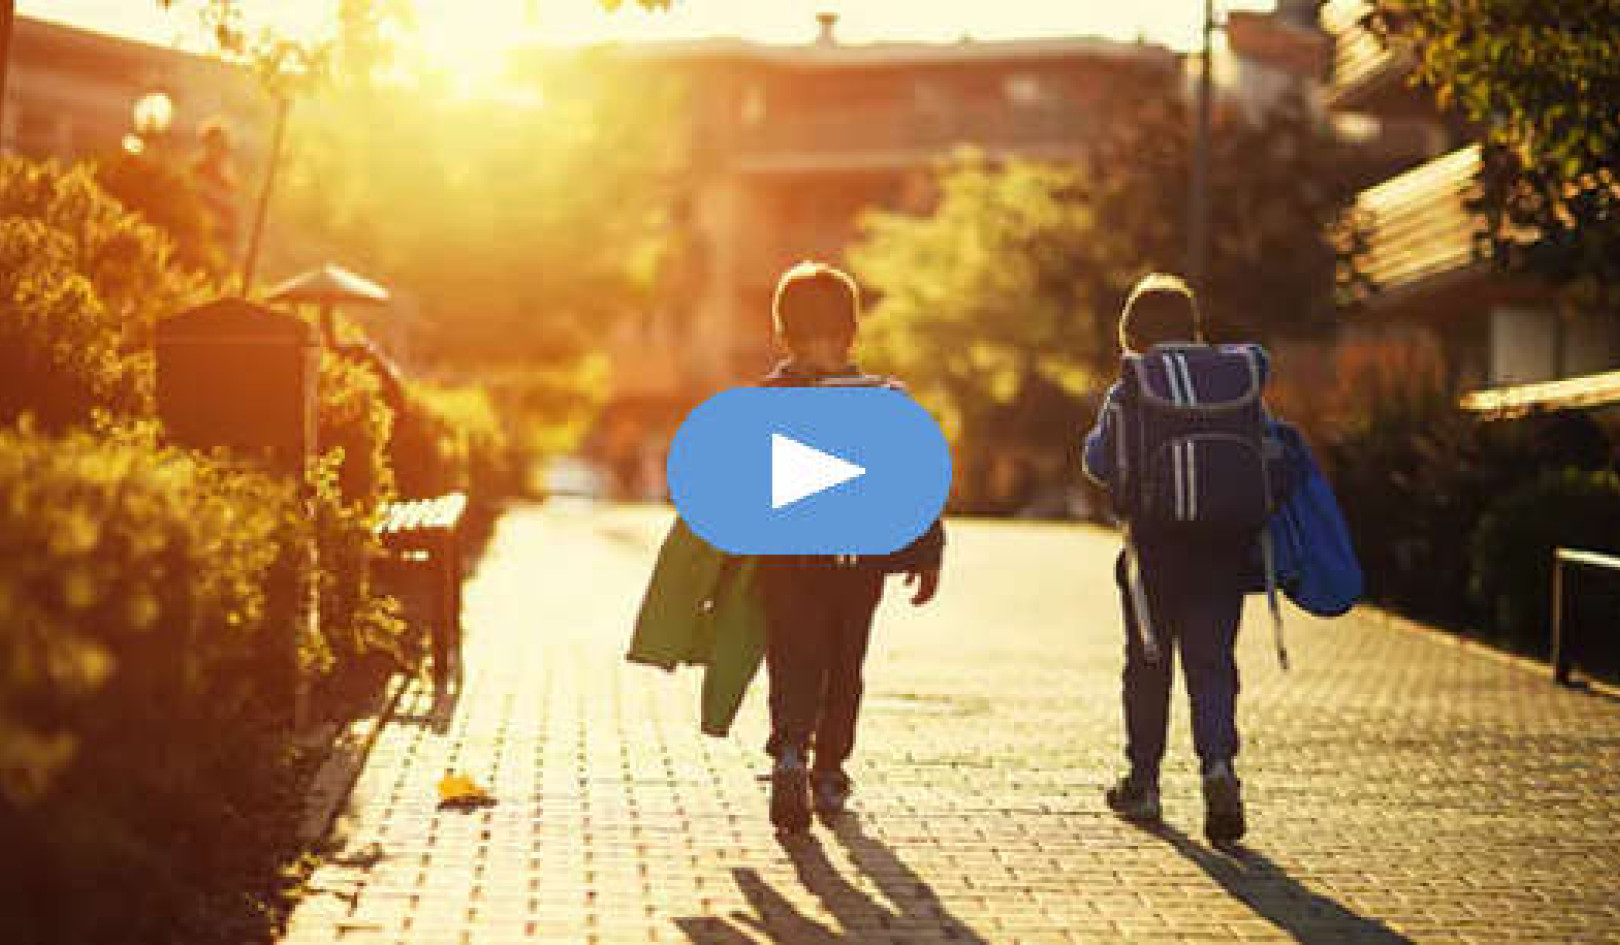 کیا بچے آزادانہ طور پر گھومنے پھرنے کے لیے جوانی میں زیادہ اعتماد محسوس کرتے ہیں؟ (ویڈیو)